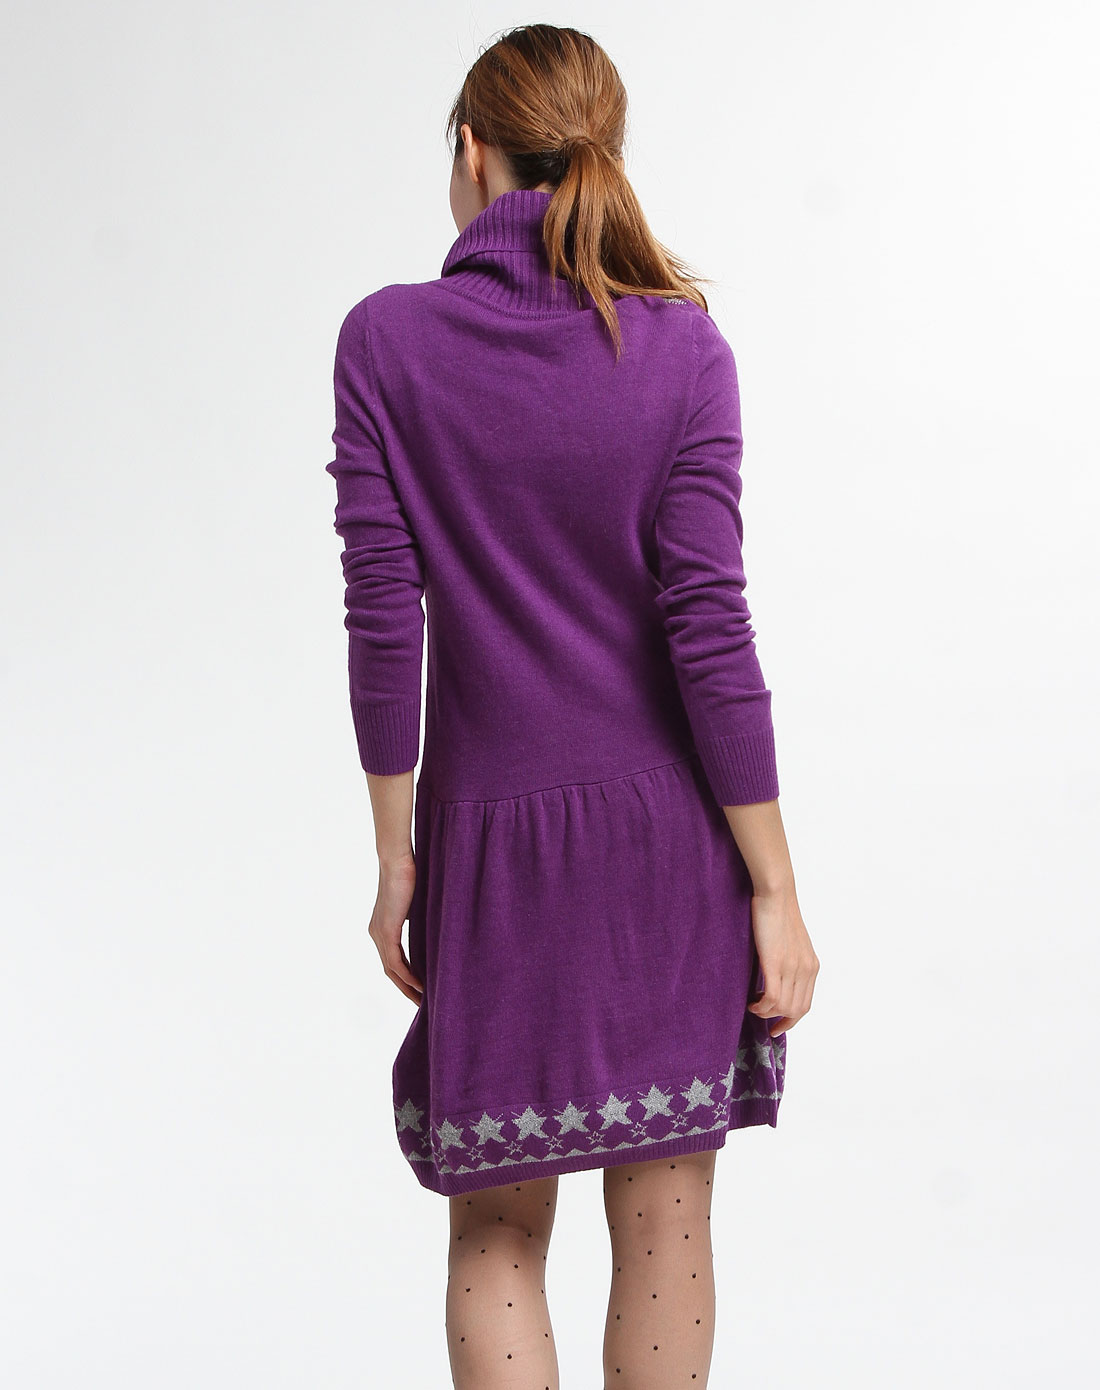 威丝曼WSM紫色五角星长袖连衣裙ND090020